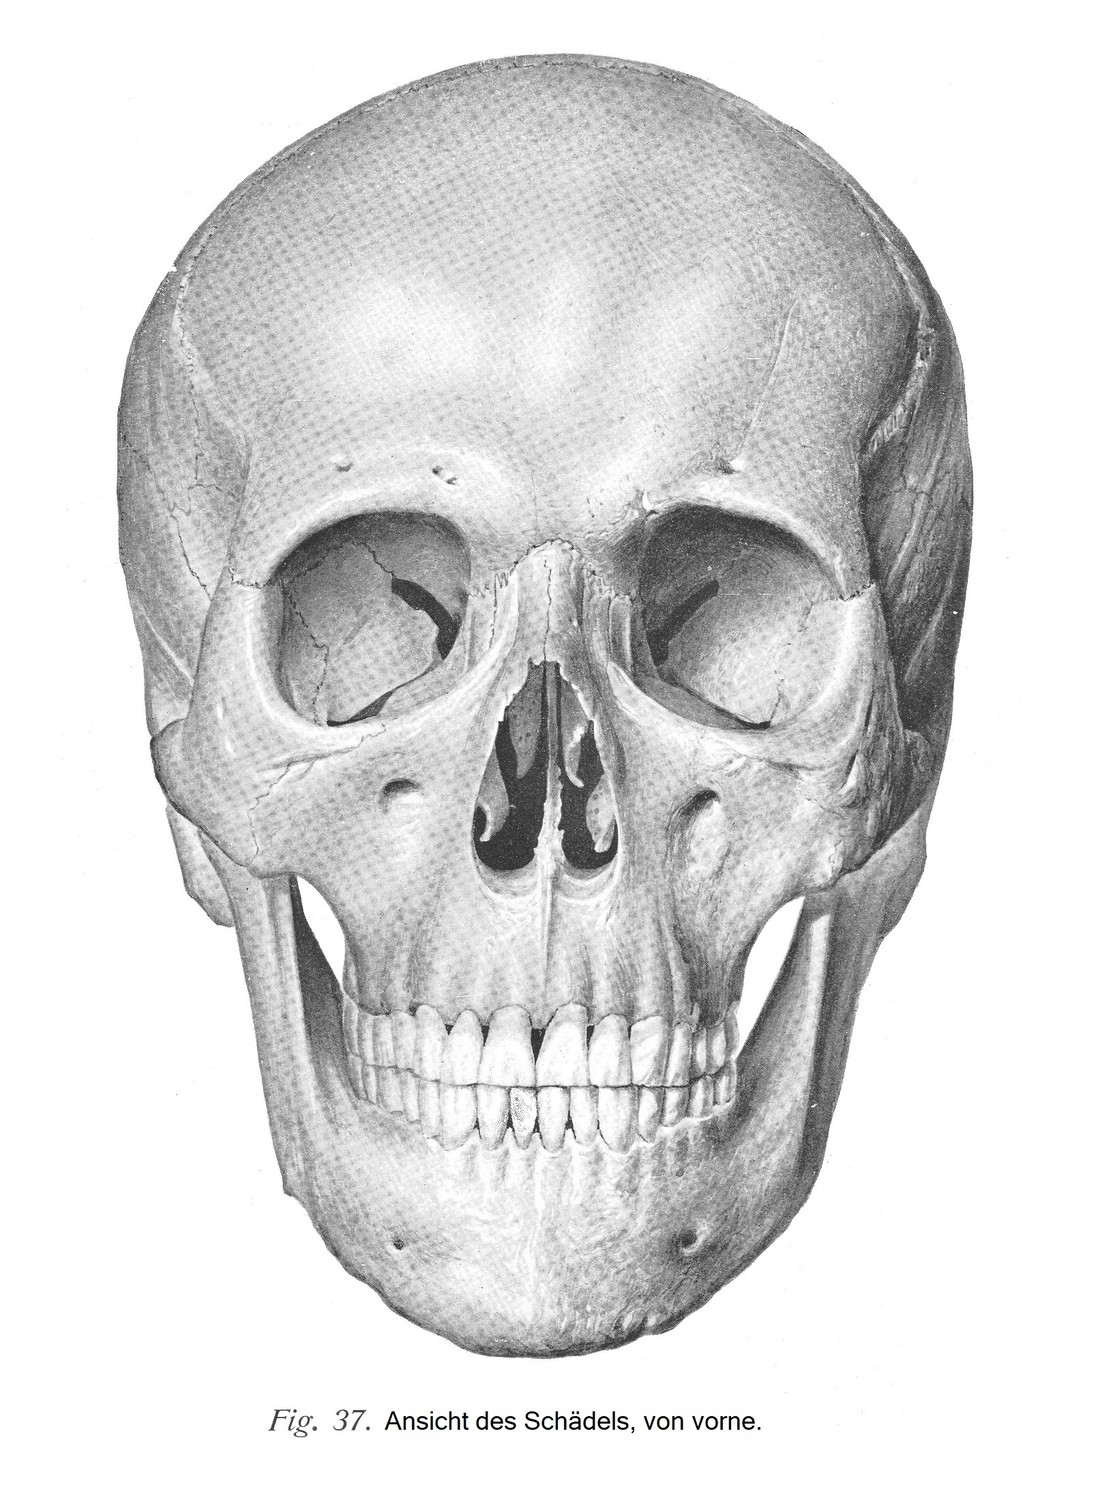 Schädel, cranium, und Schädelknochen, ossa cranii. Schädel als Ganzes